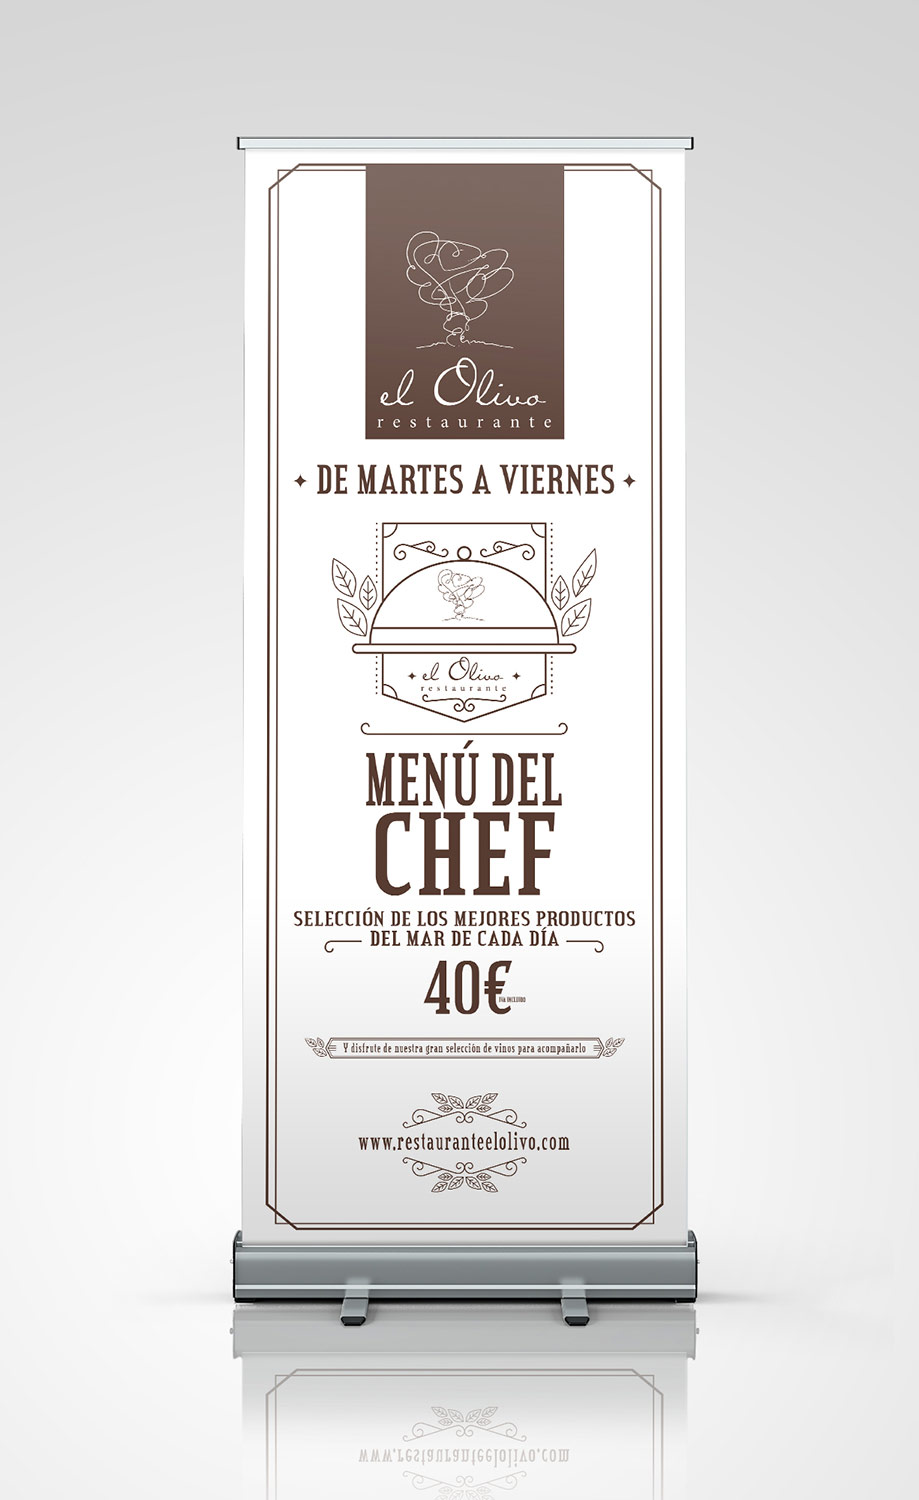 Restaurante el olivo - Diseño Gráfico - alQuimia Publicidad - Valladolid